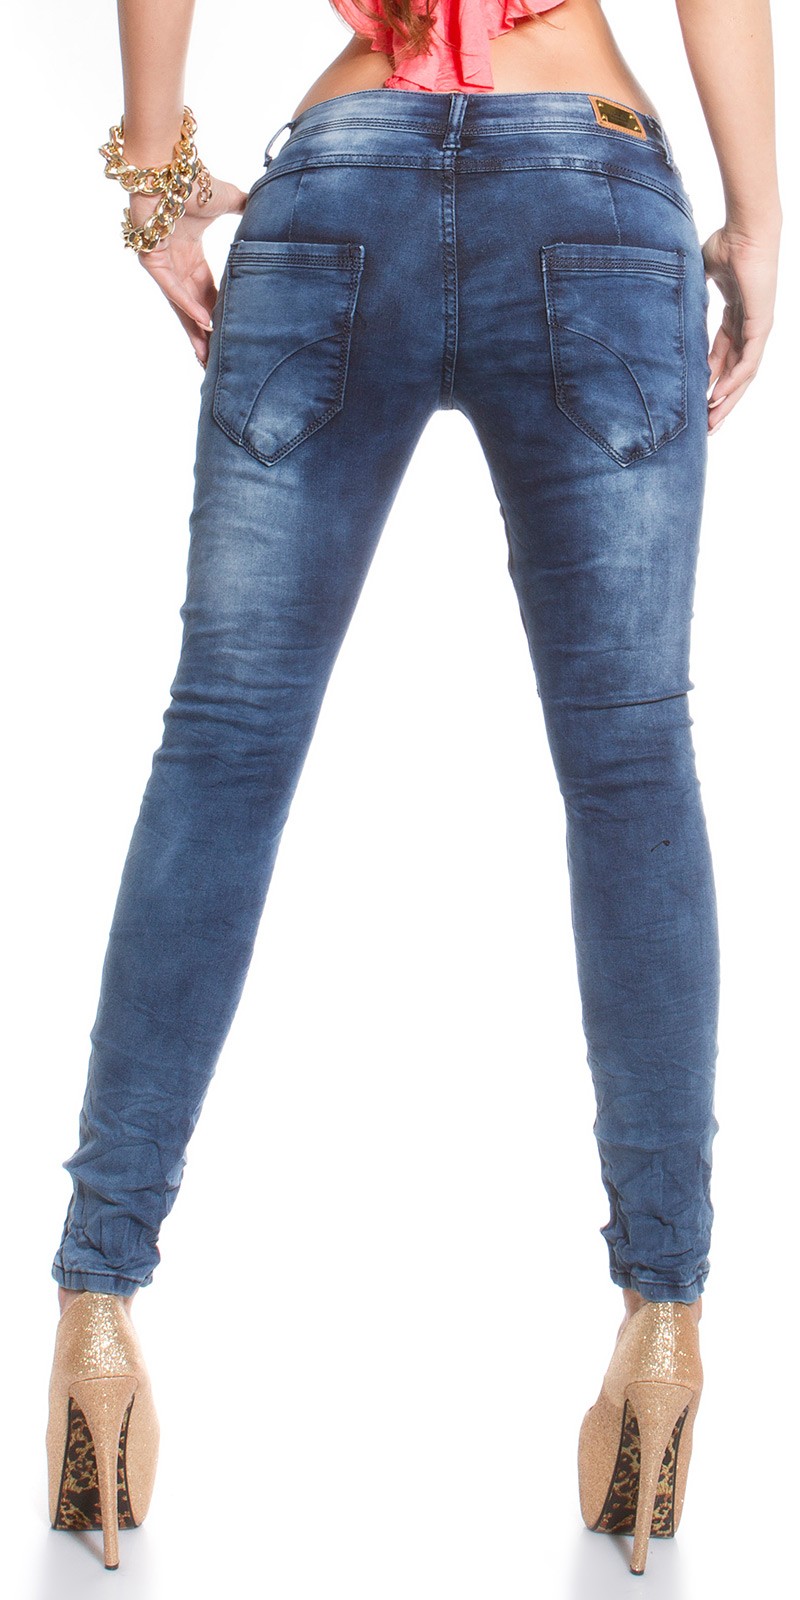 Jeans estilo saruel 2